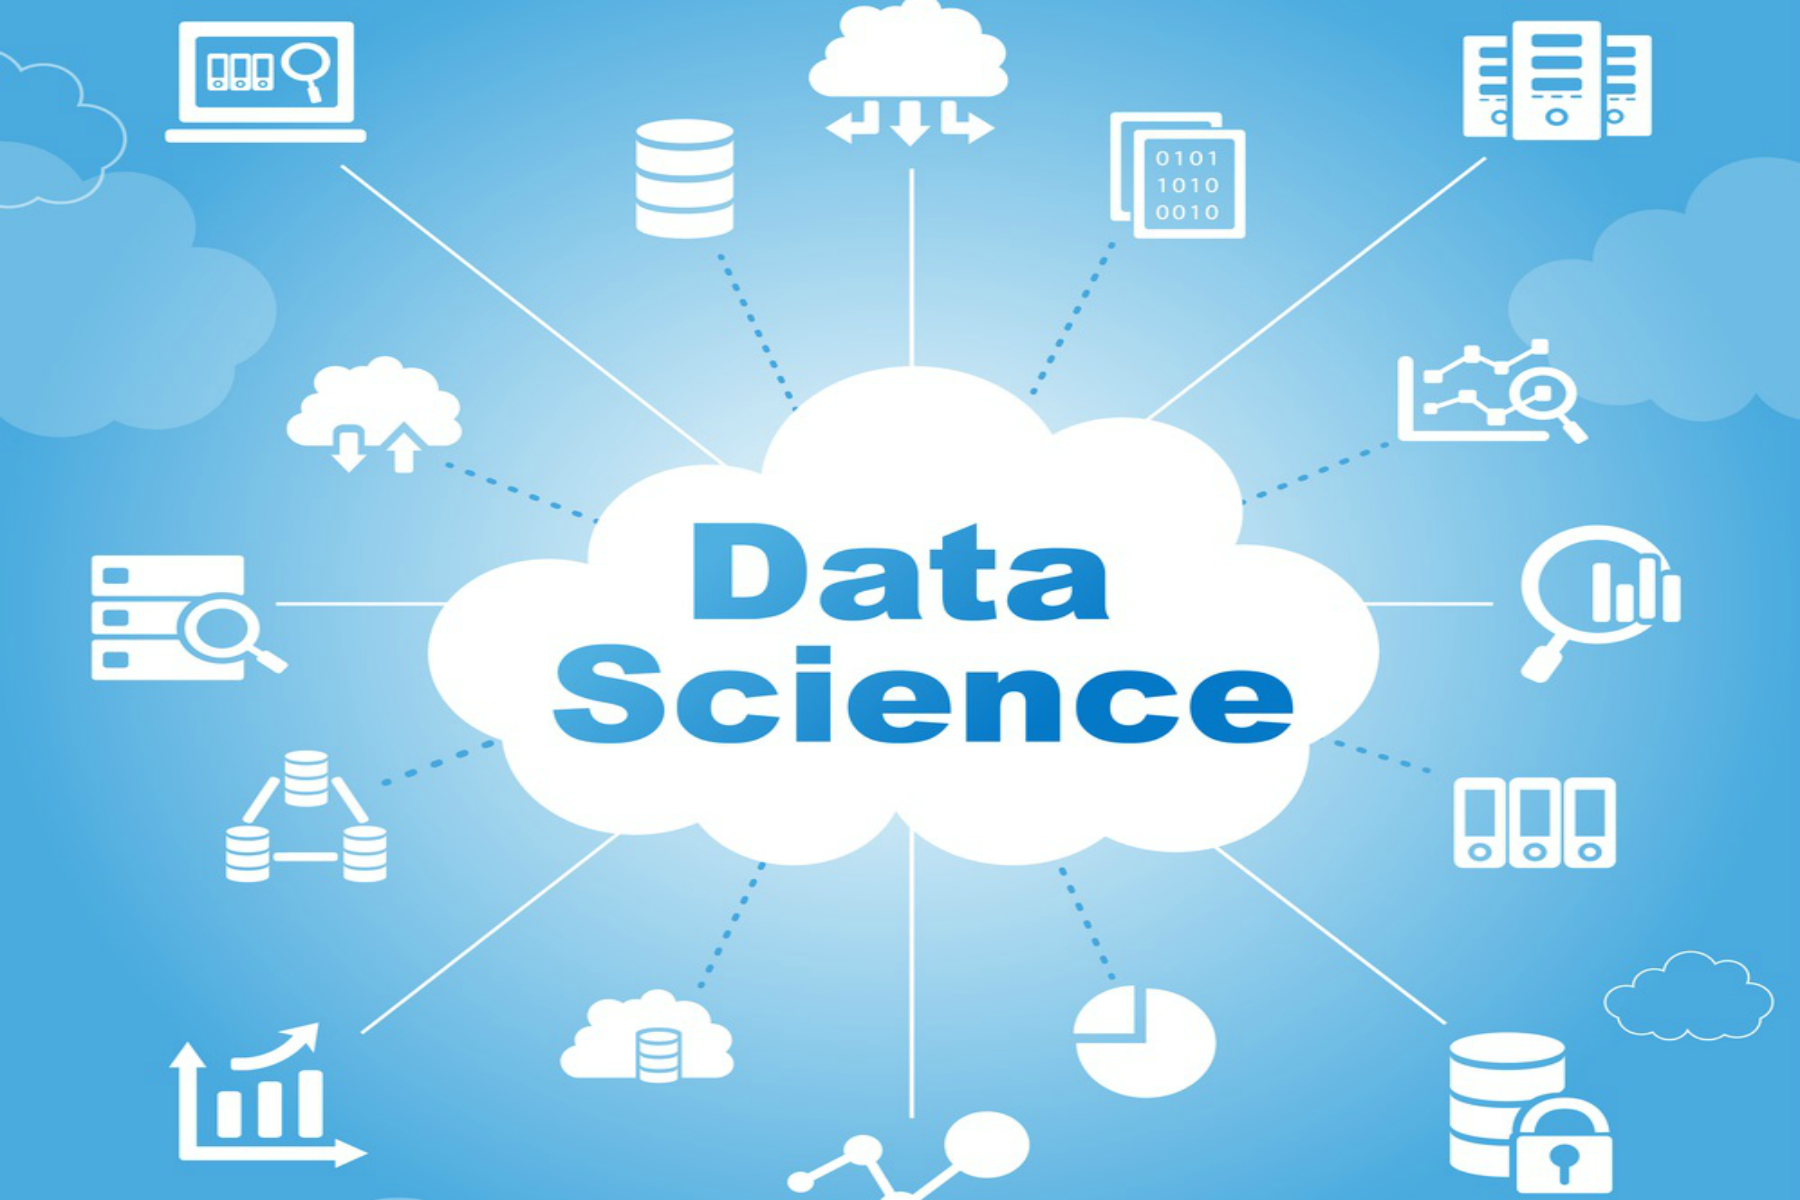 DataScience Training in Chennai